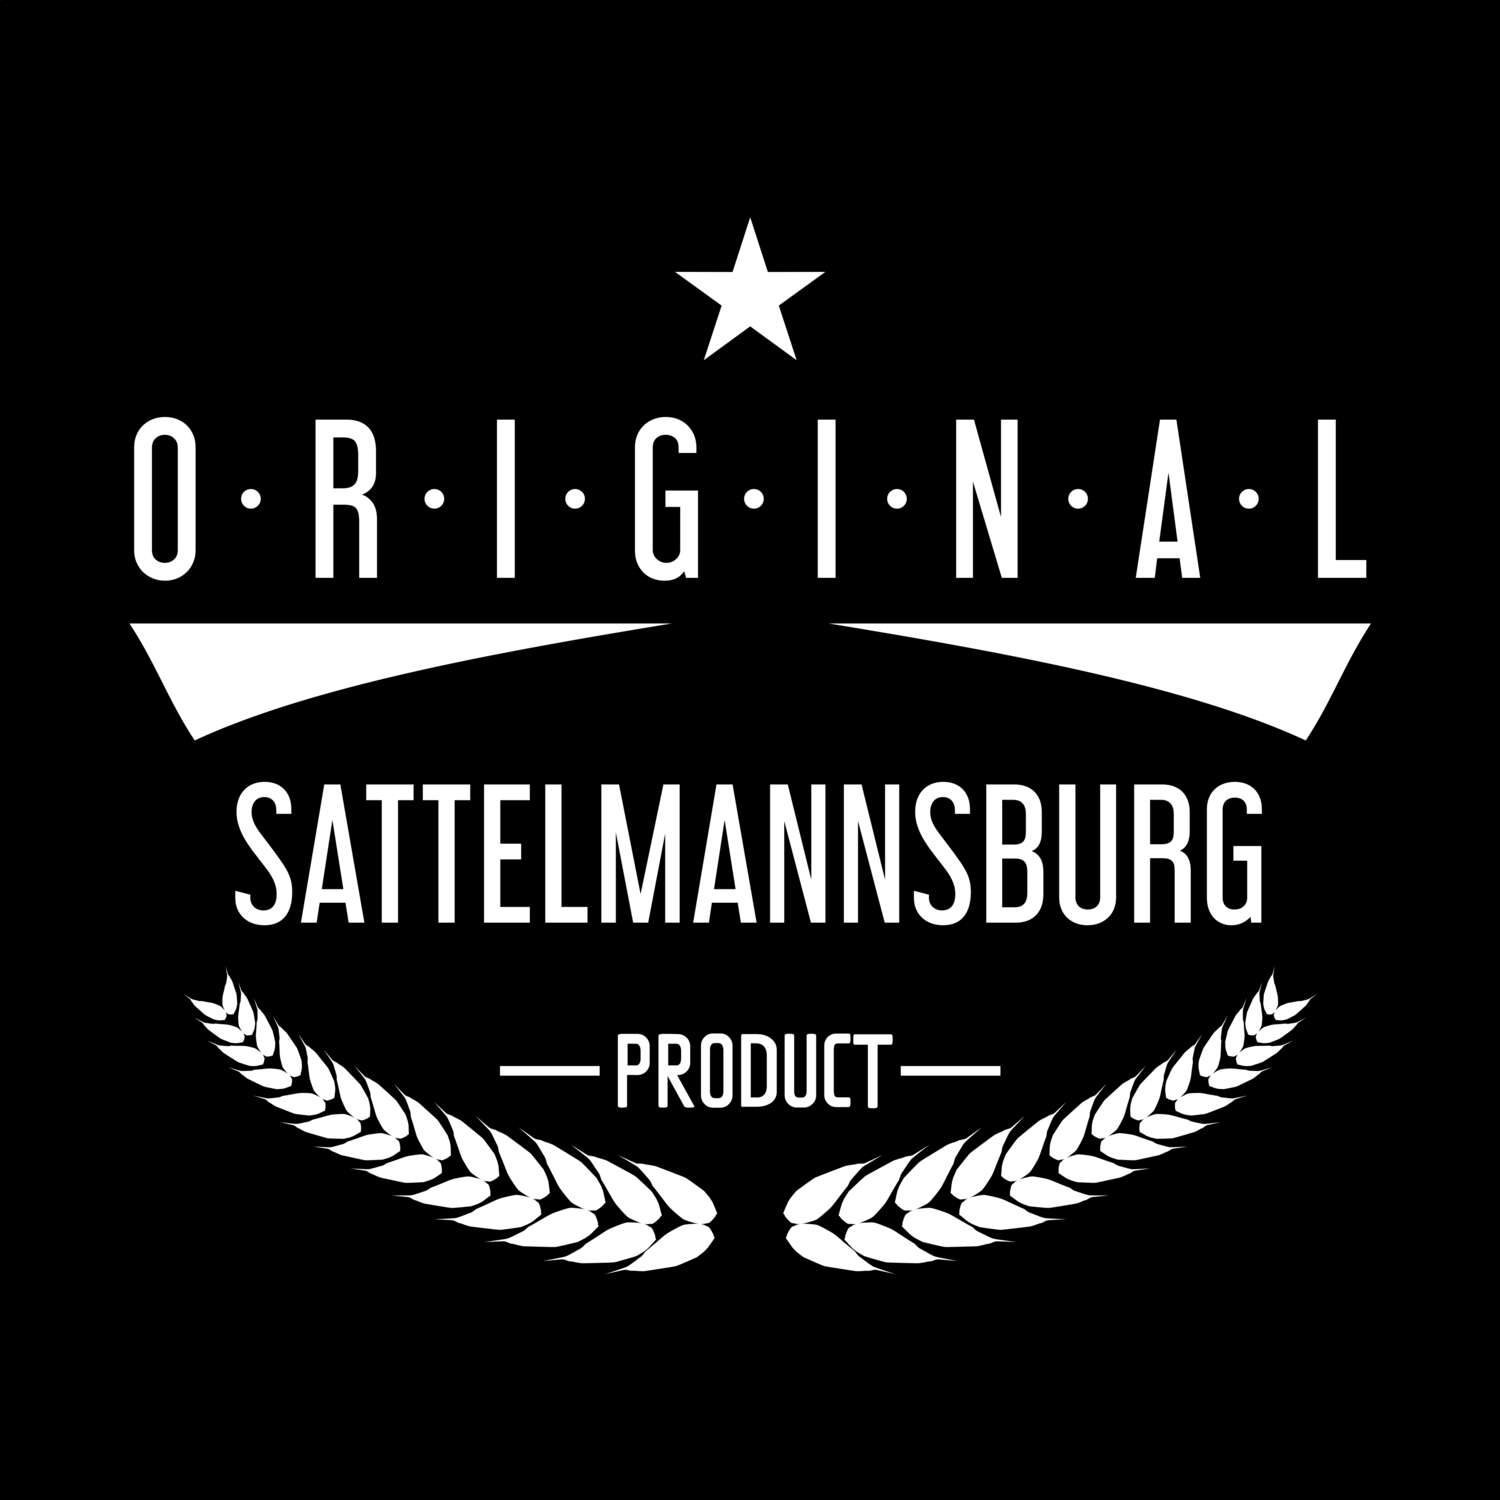 Sattelmannsburg T-Shirt »Original Product«